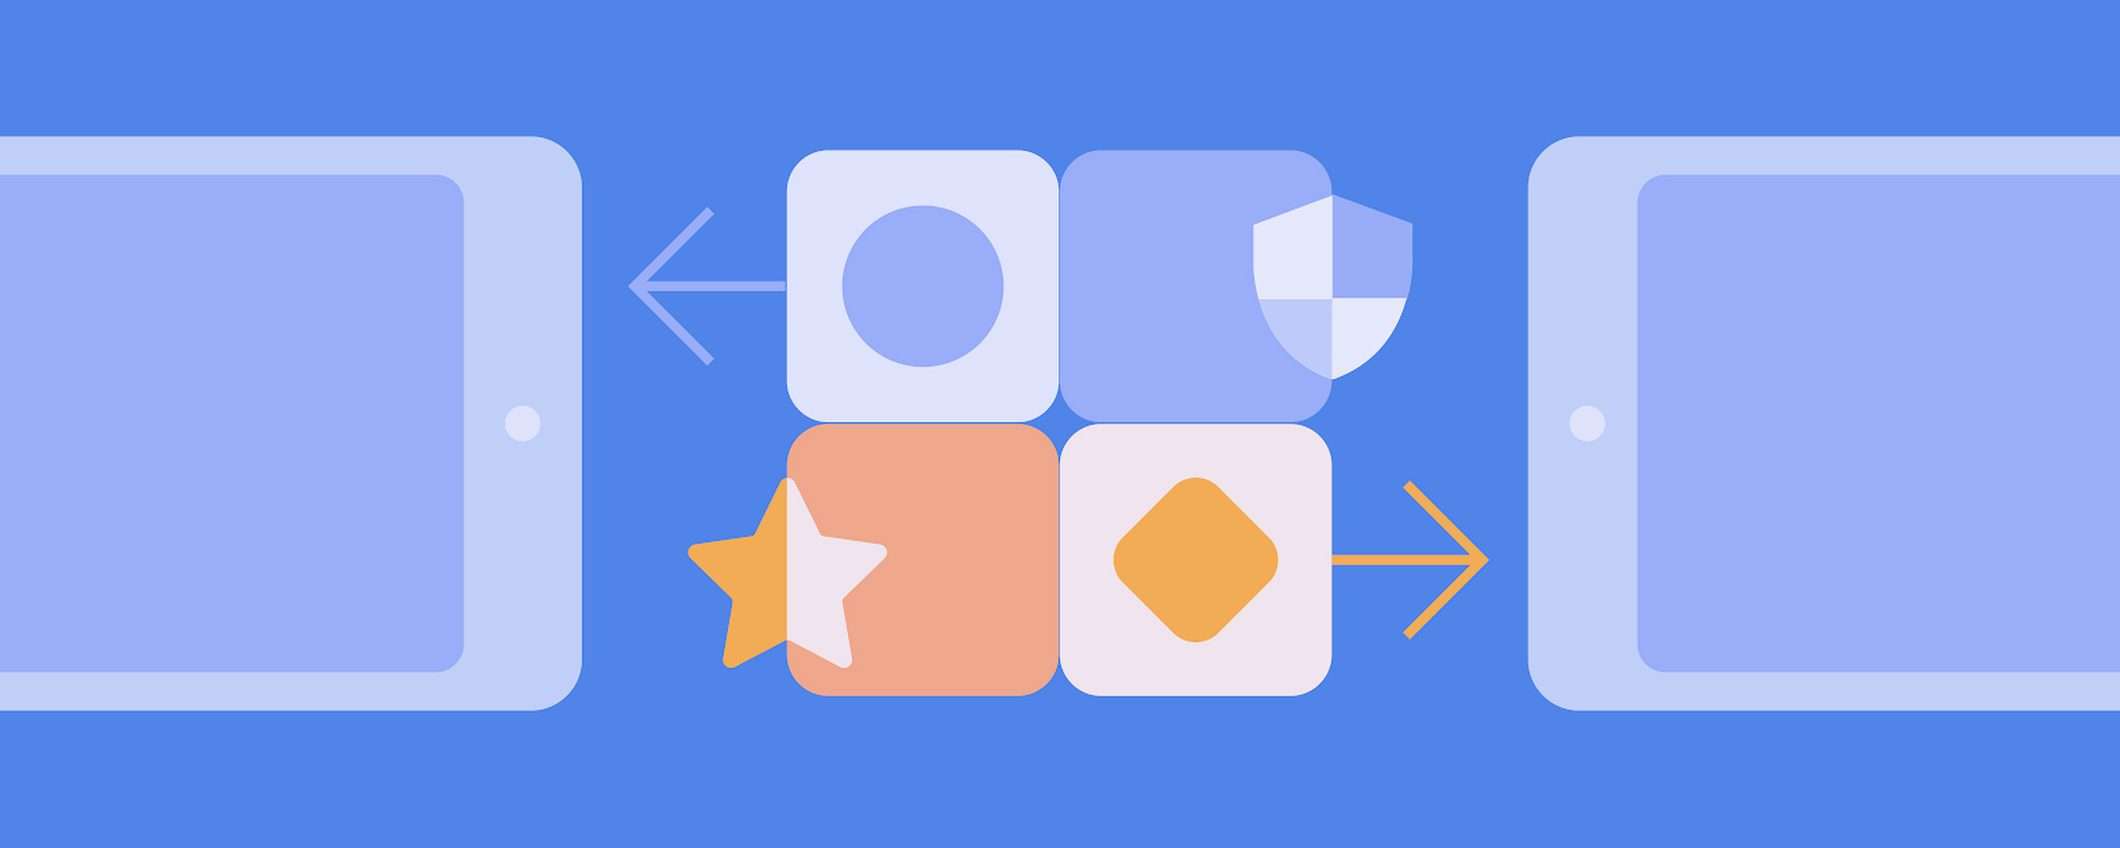 Google Play: test delle app con almeno 20 utenti